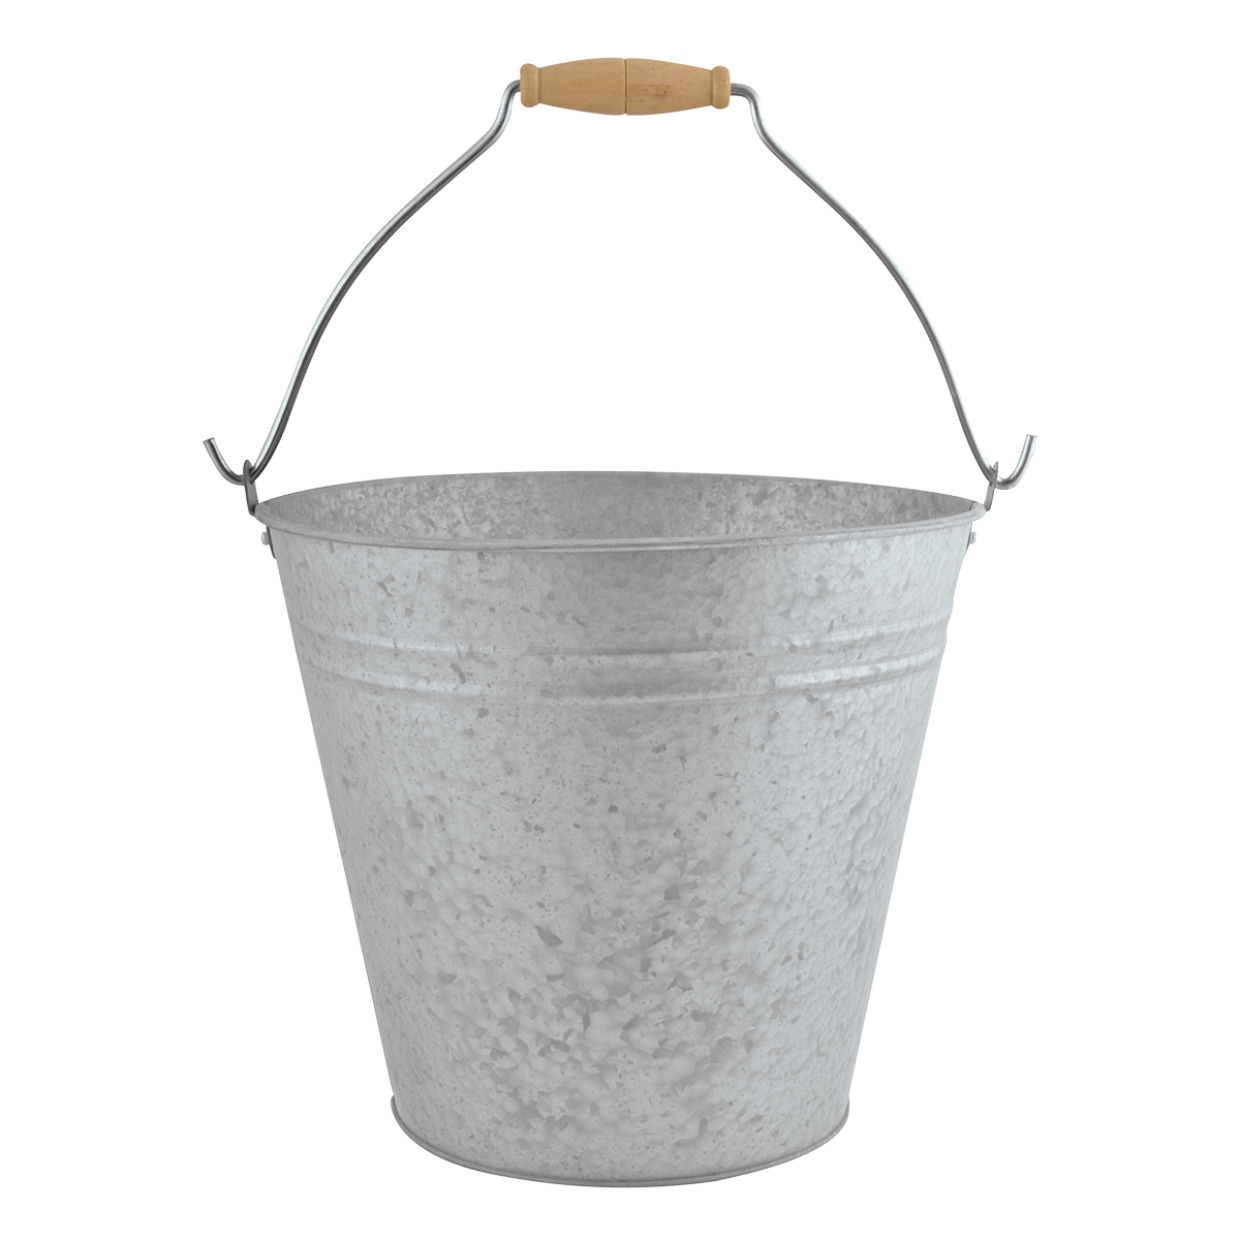 Zinken emmer-bloempot-plantenpot met handvat 9,5 liter